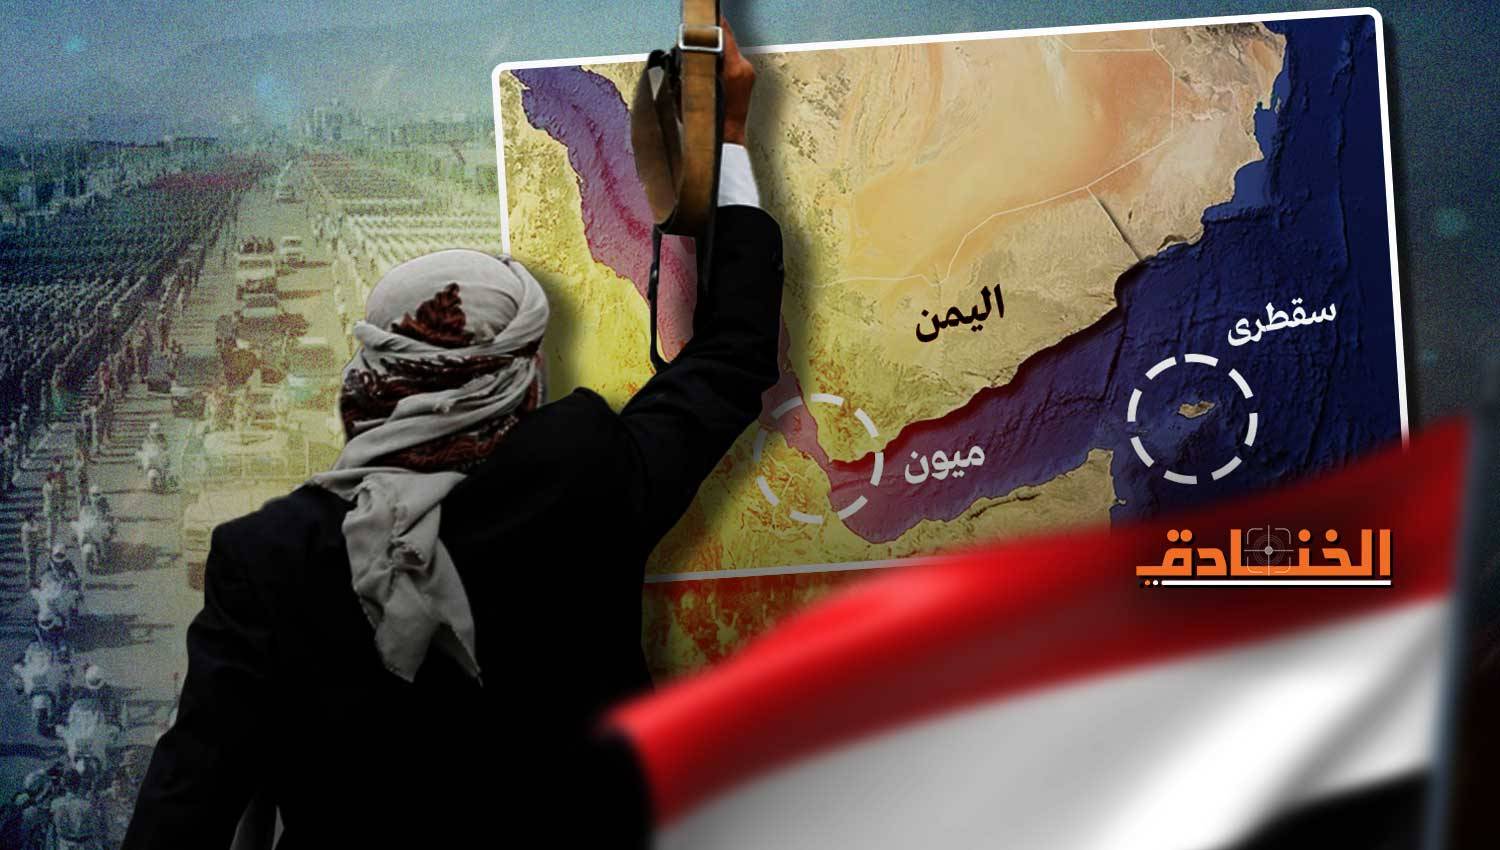 سياسي عربي: كتائب يمنية وصلت لبنان (فيديو)